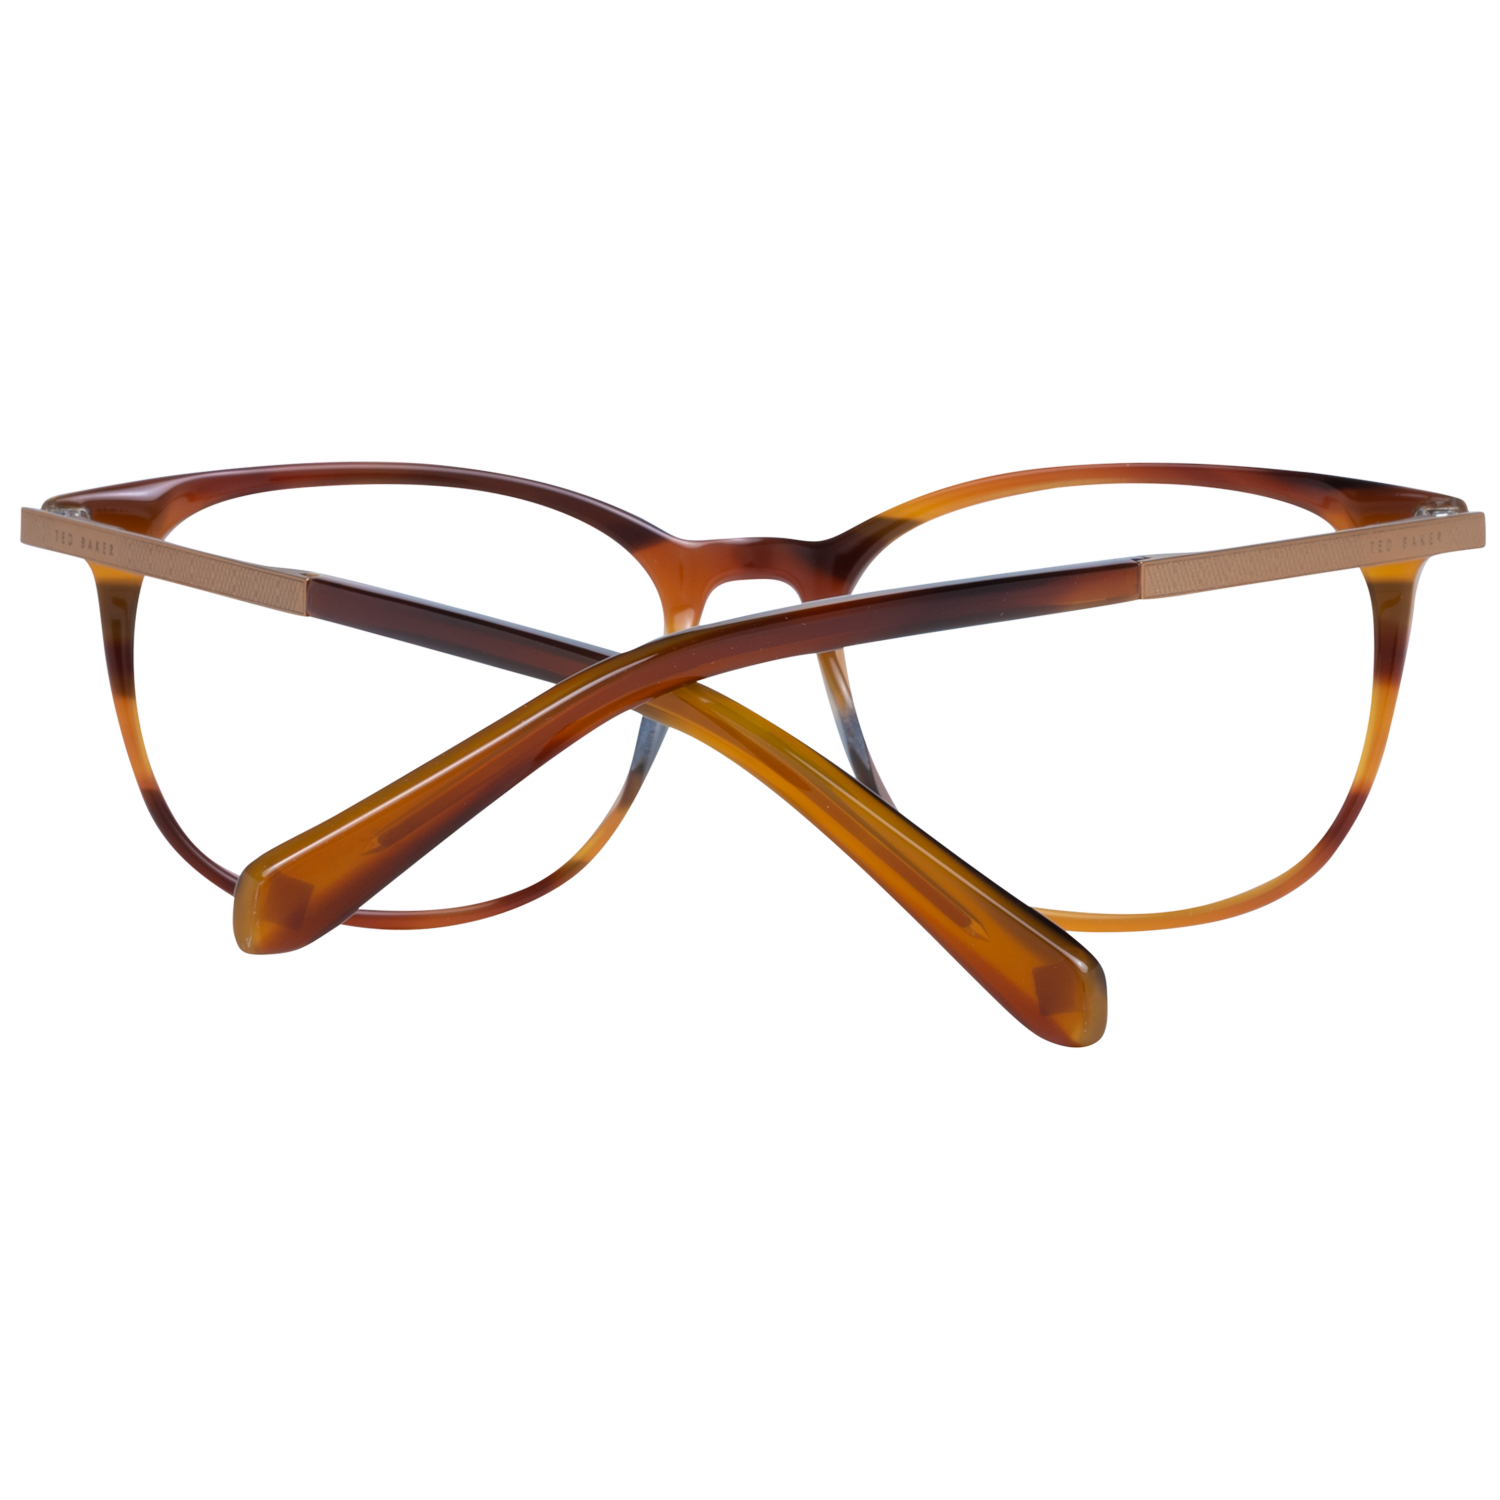 Ted Baker Frames Ted Baker Optical Frame Prescription Glasses TB8219 351 52 Eyeglasses Eyewear UK USA Australia 